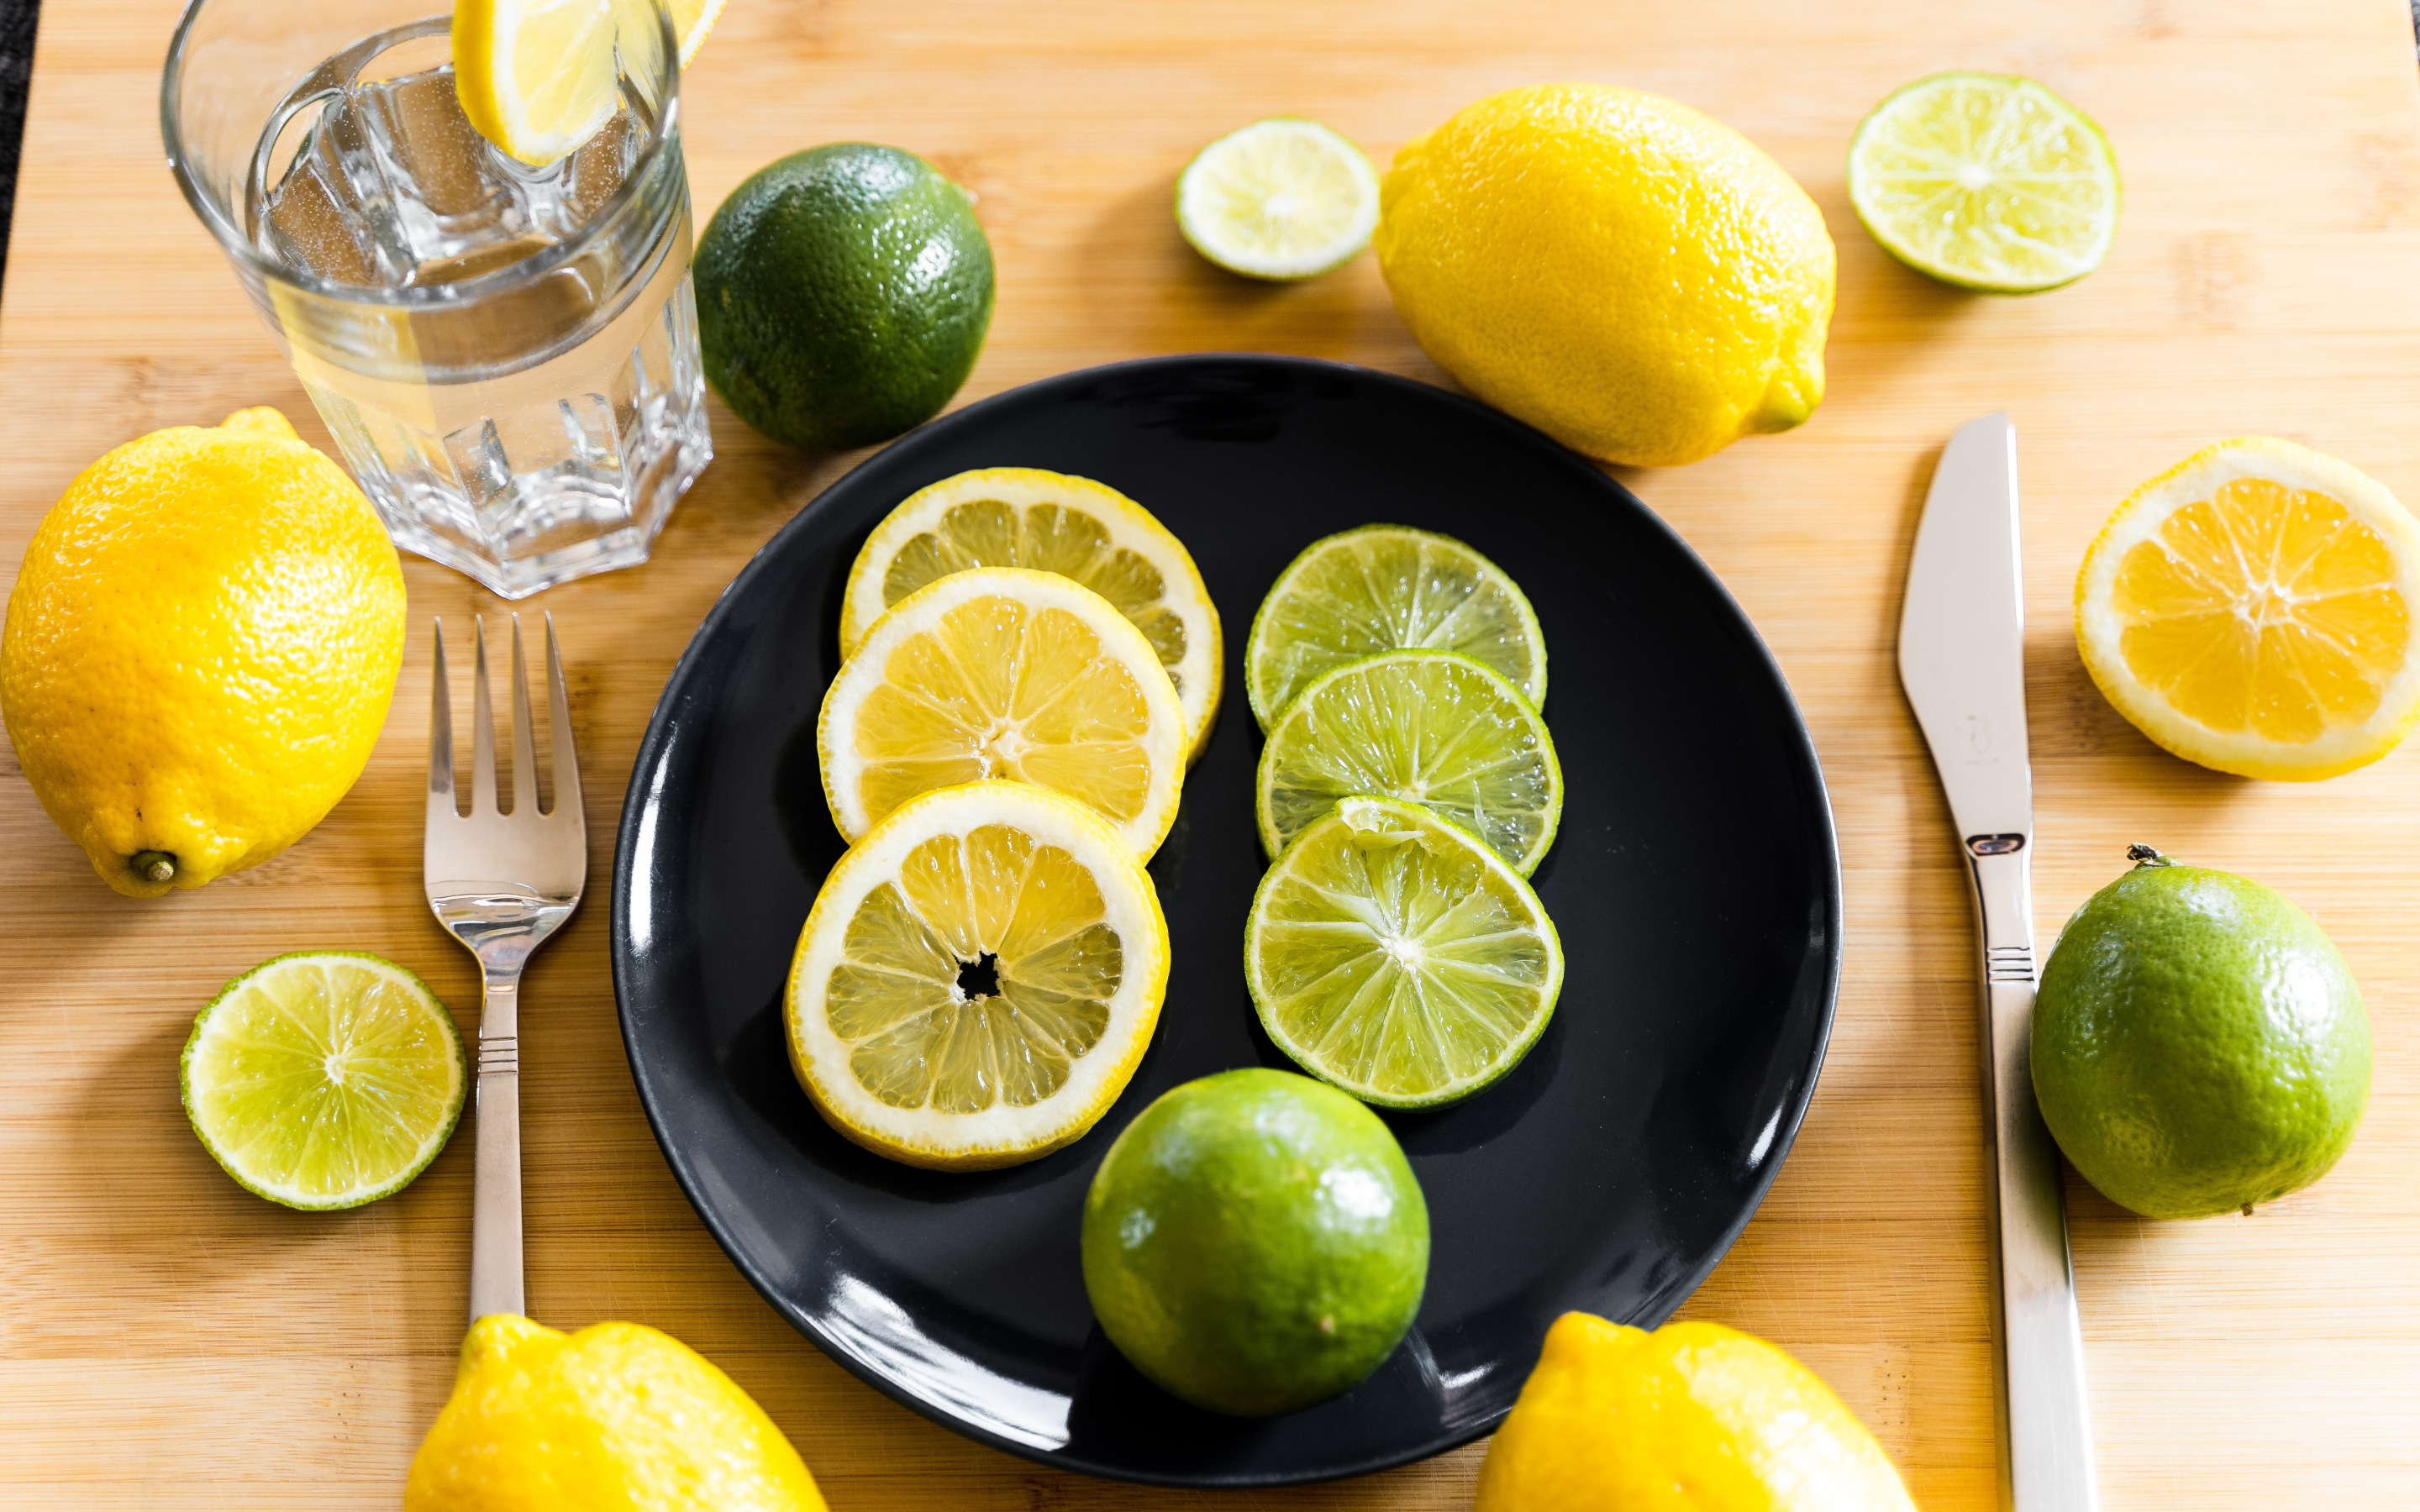 Как правильно пить лимон для похудения